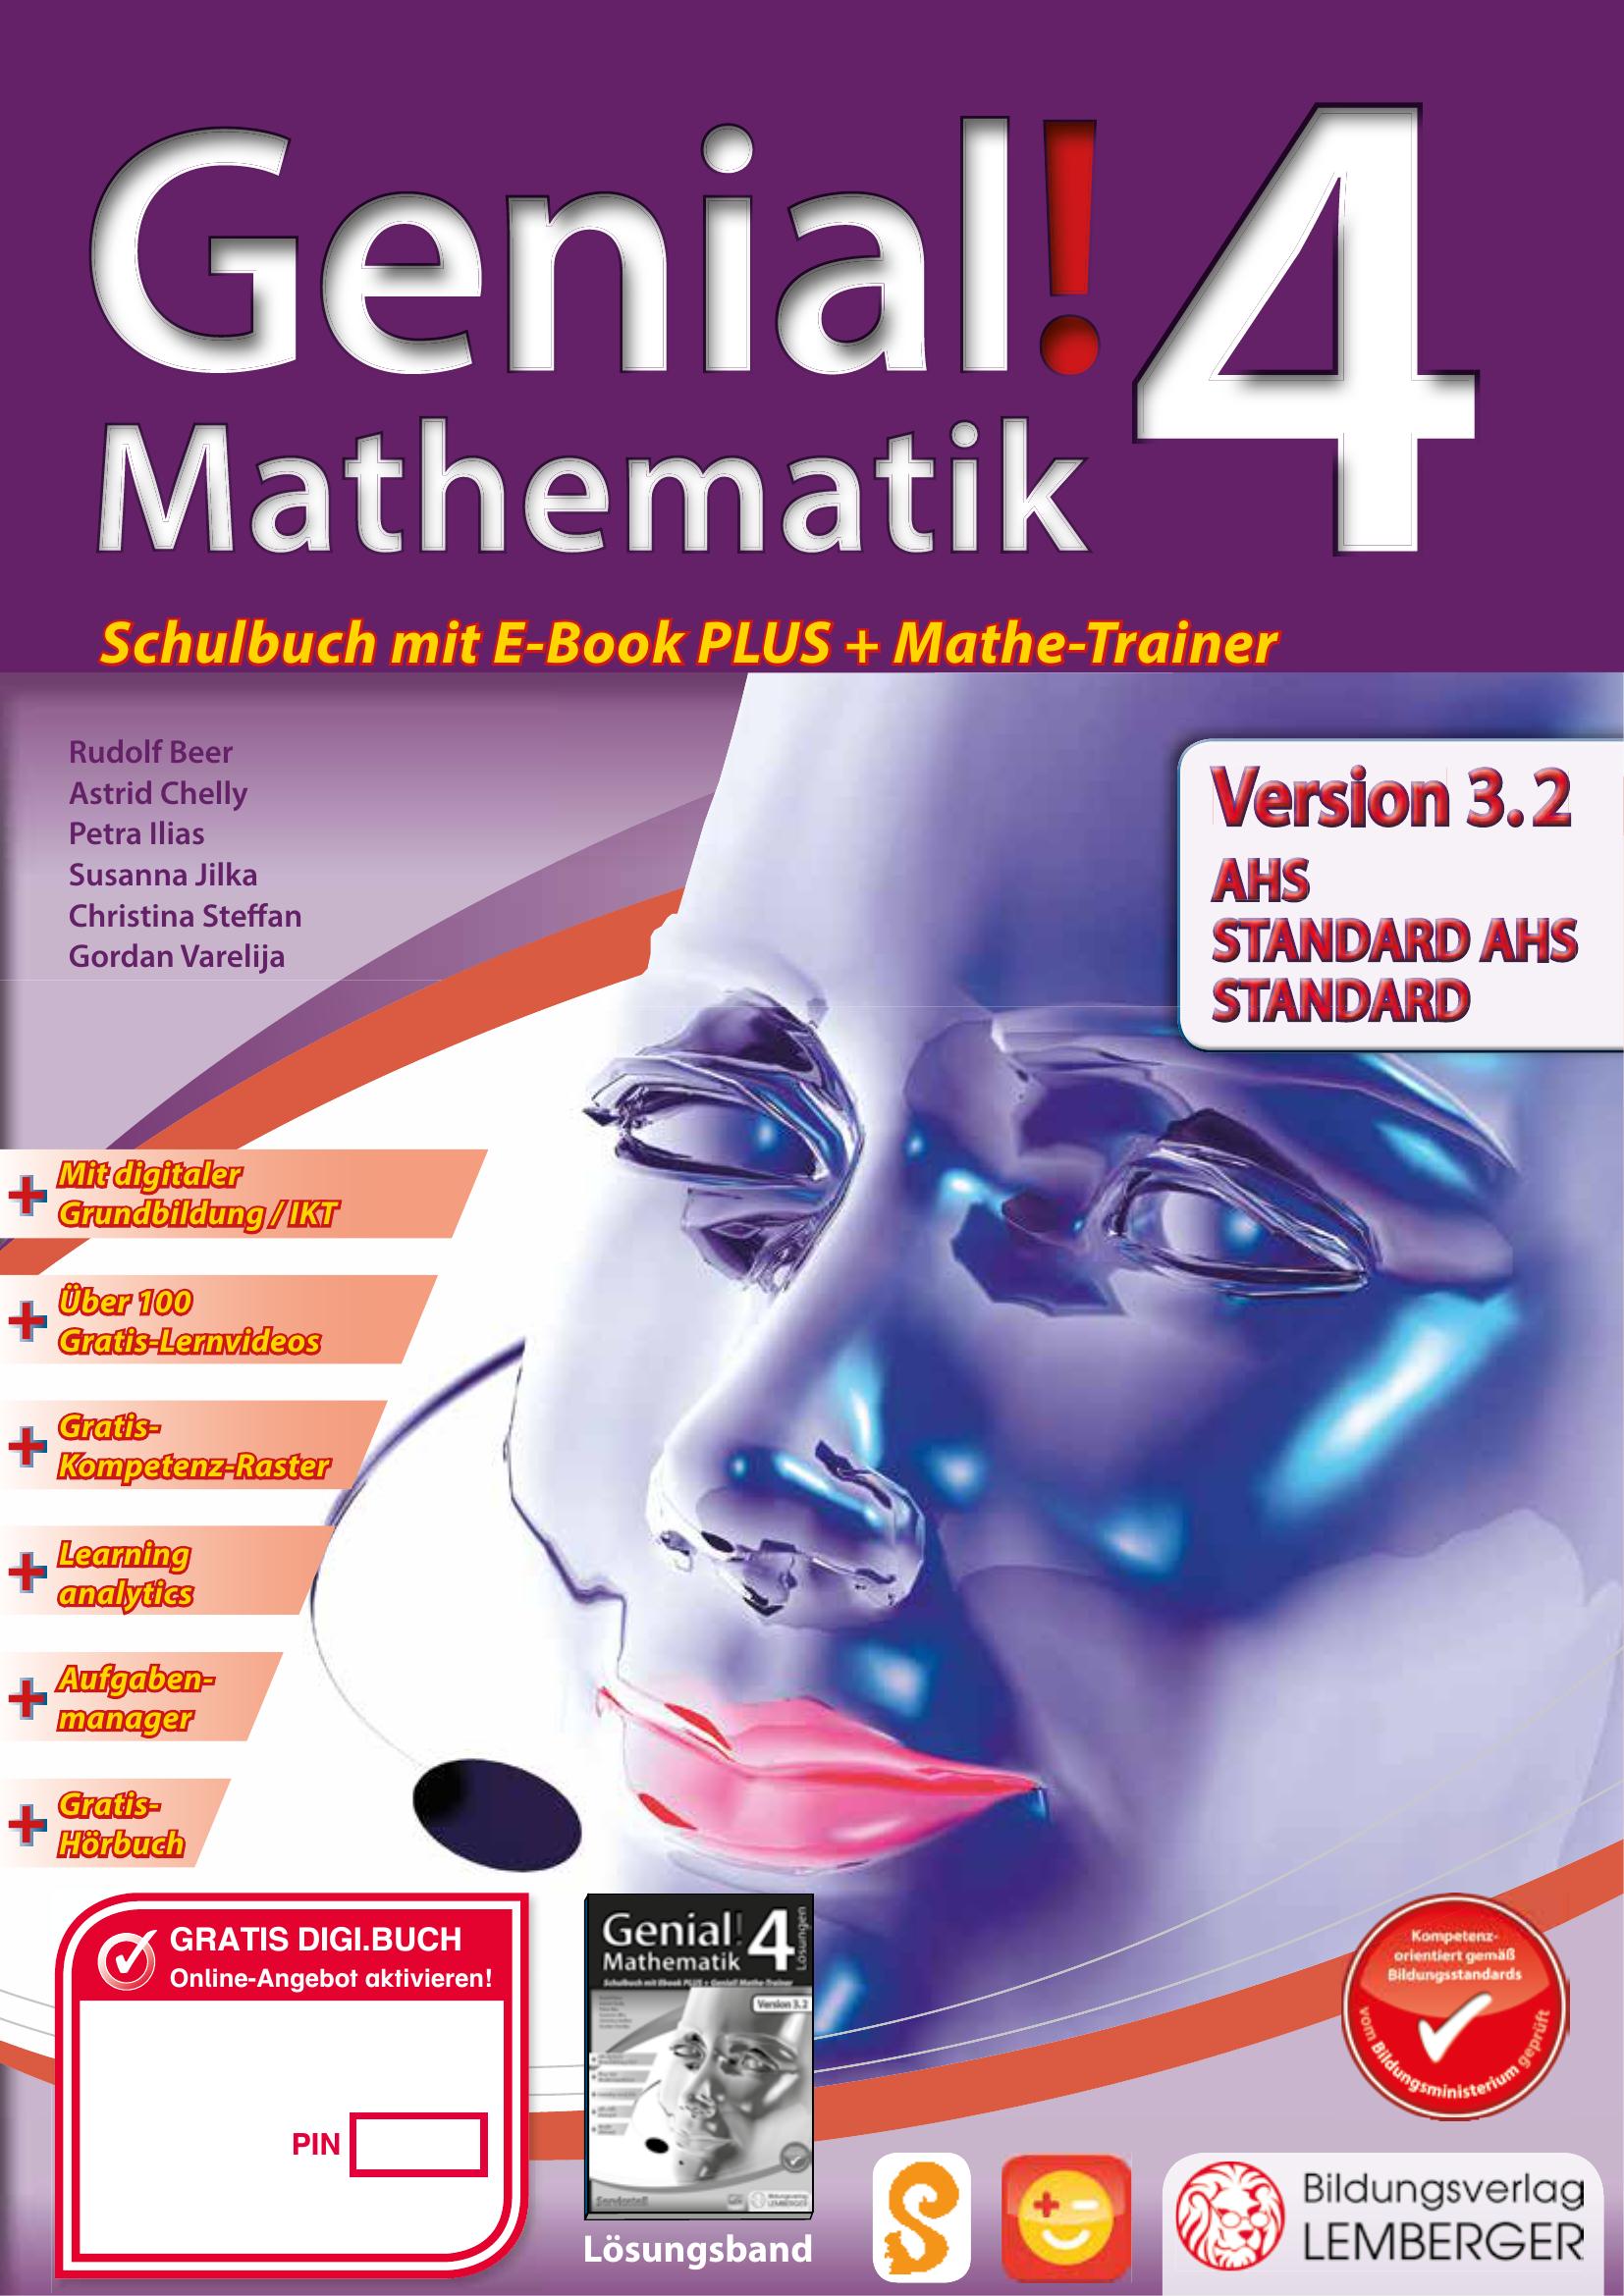 Genial! Mathematik 4 - Schulbuch IKT_Version 3.2 PLUS-Lizenz mit Genial! Mathe-Trainer